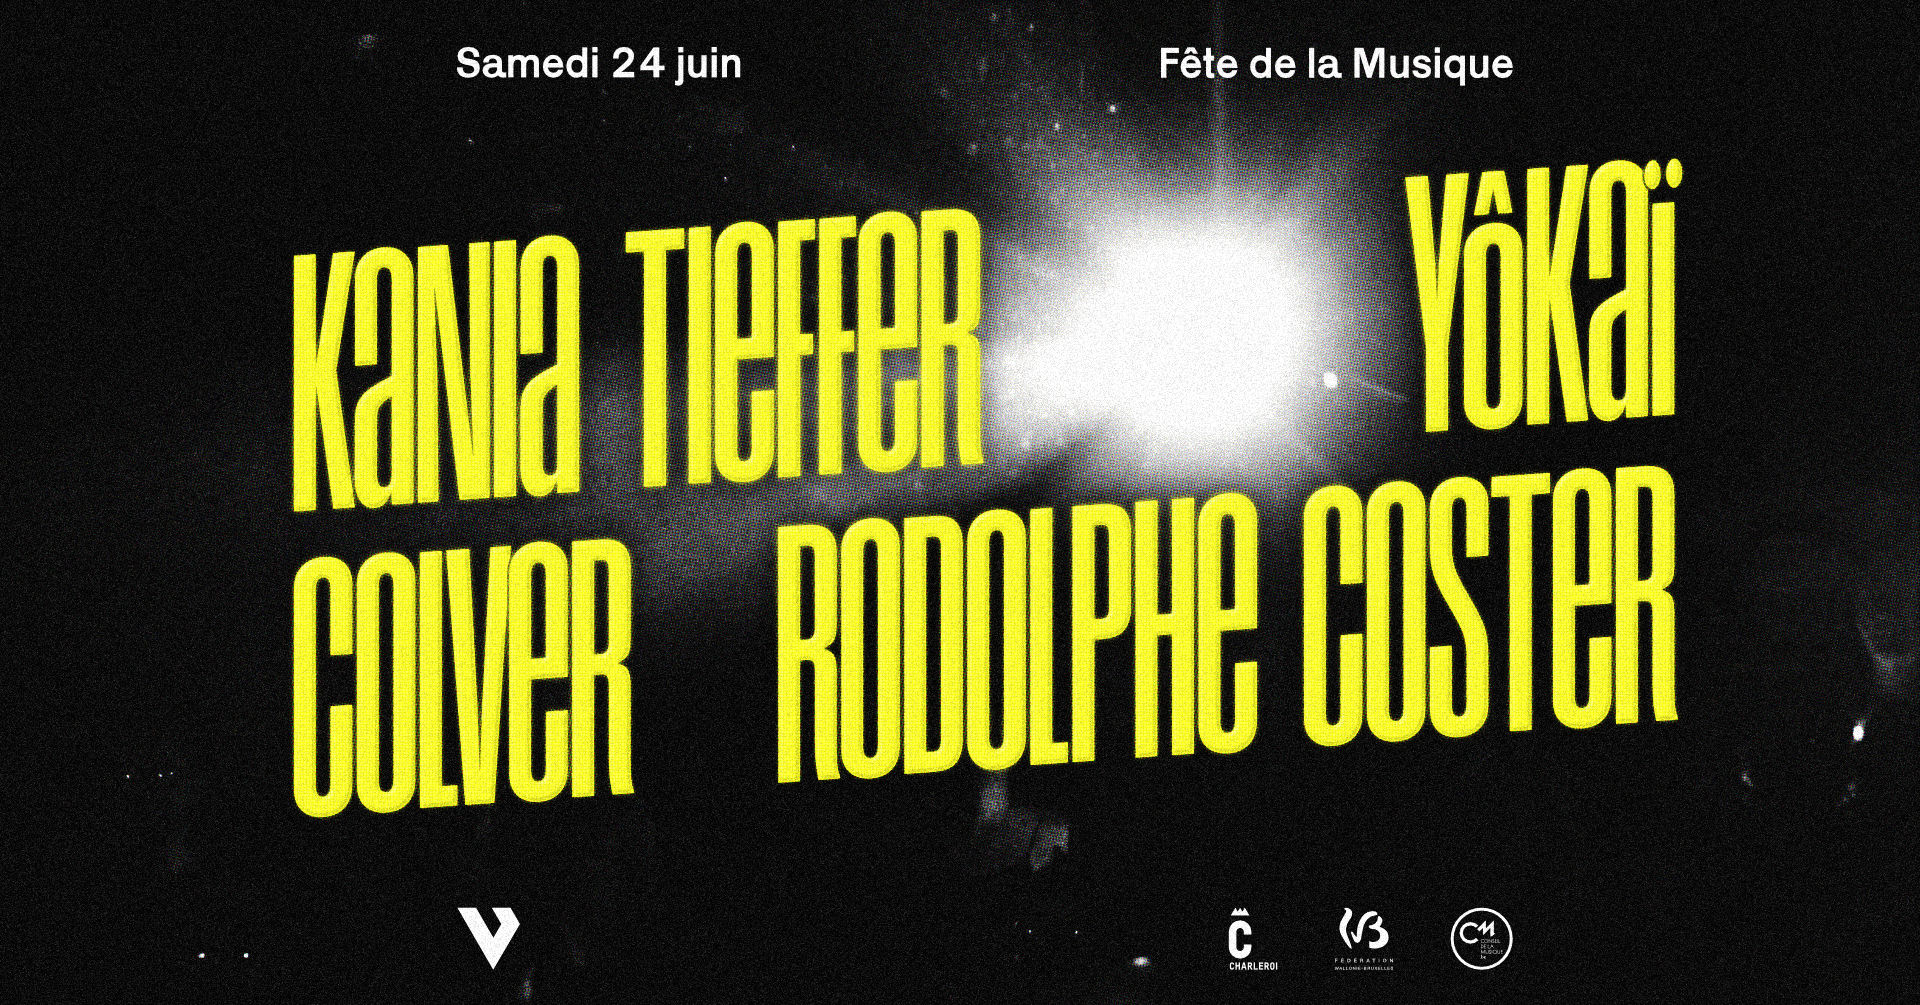 Kania Tieffer + Yôkaï + Colver + Rodolphe Coster